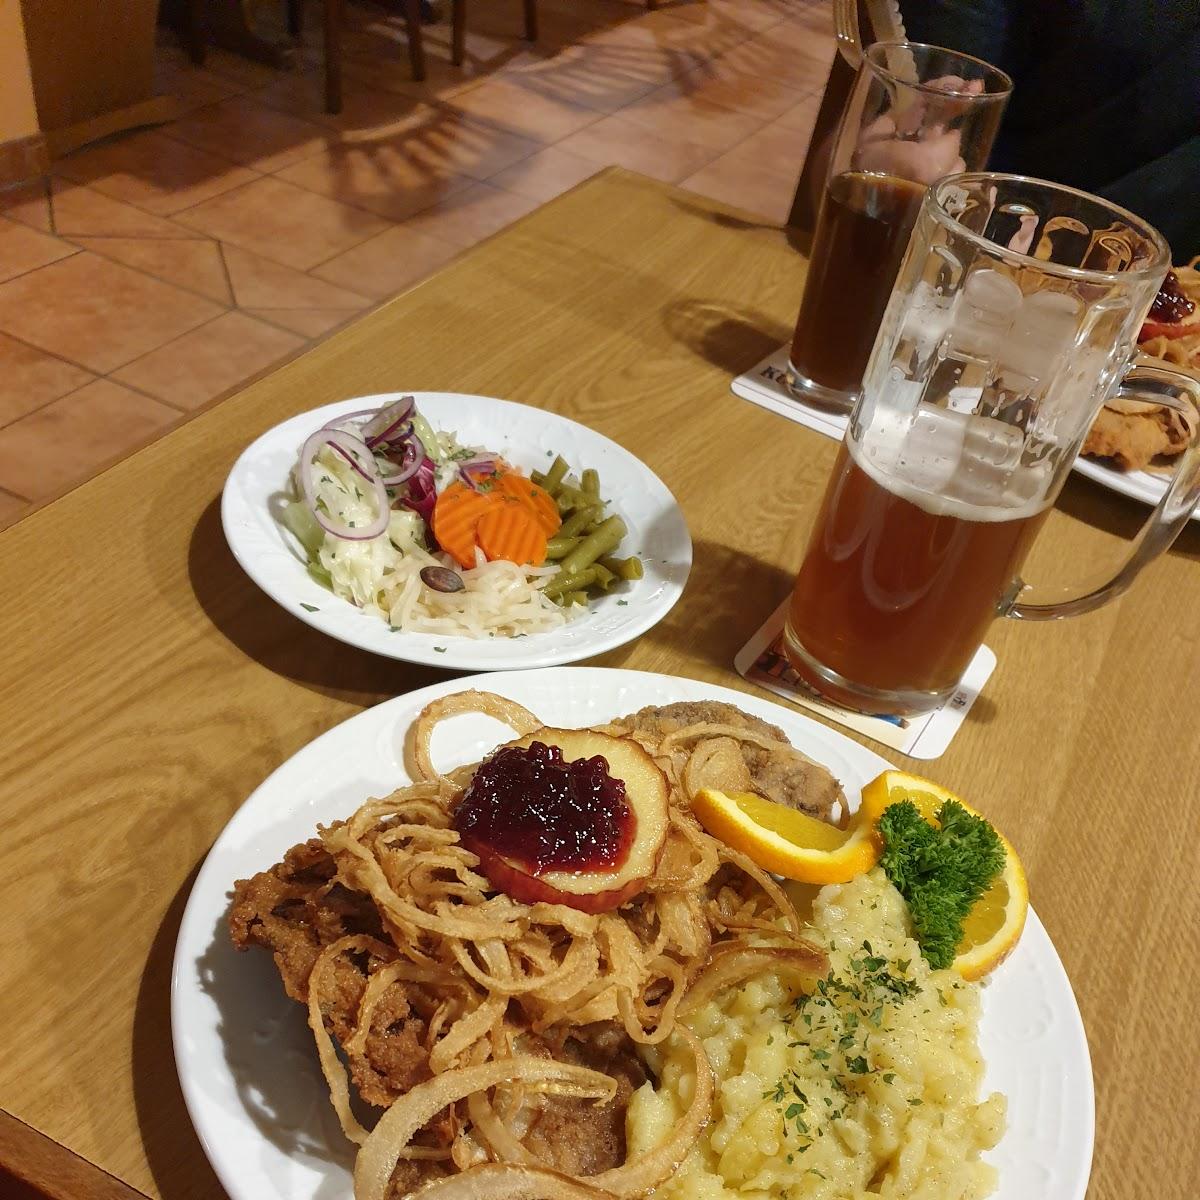 Restaurant "Zum Weissen Lamm" in Neunkirchen am Brand